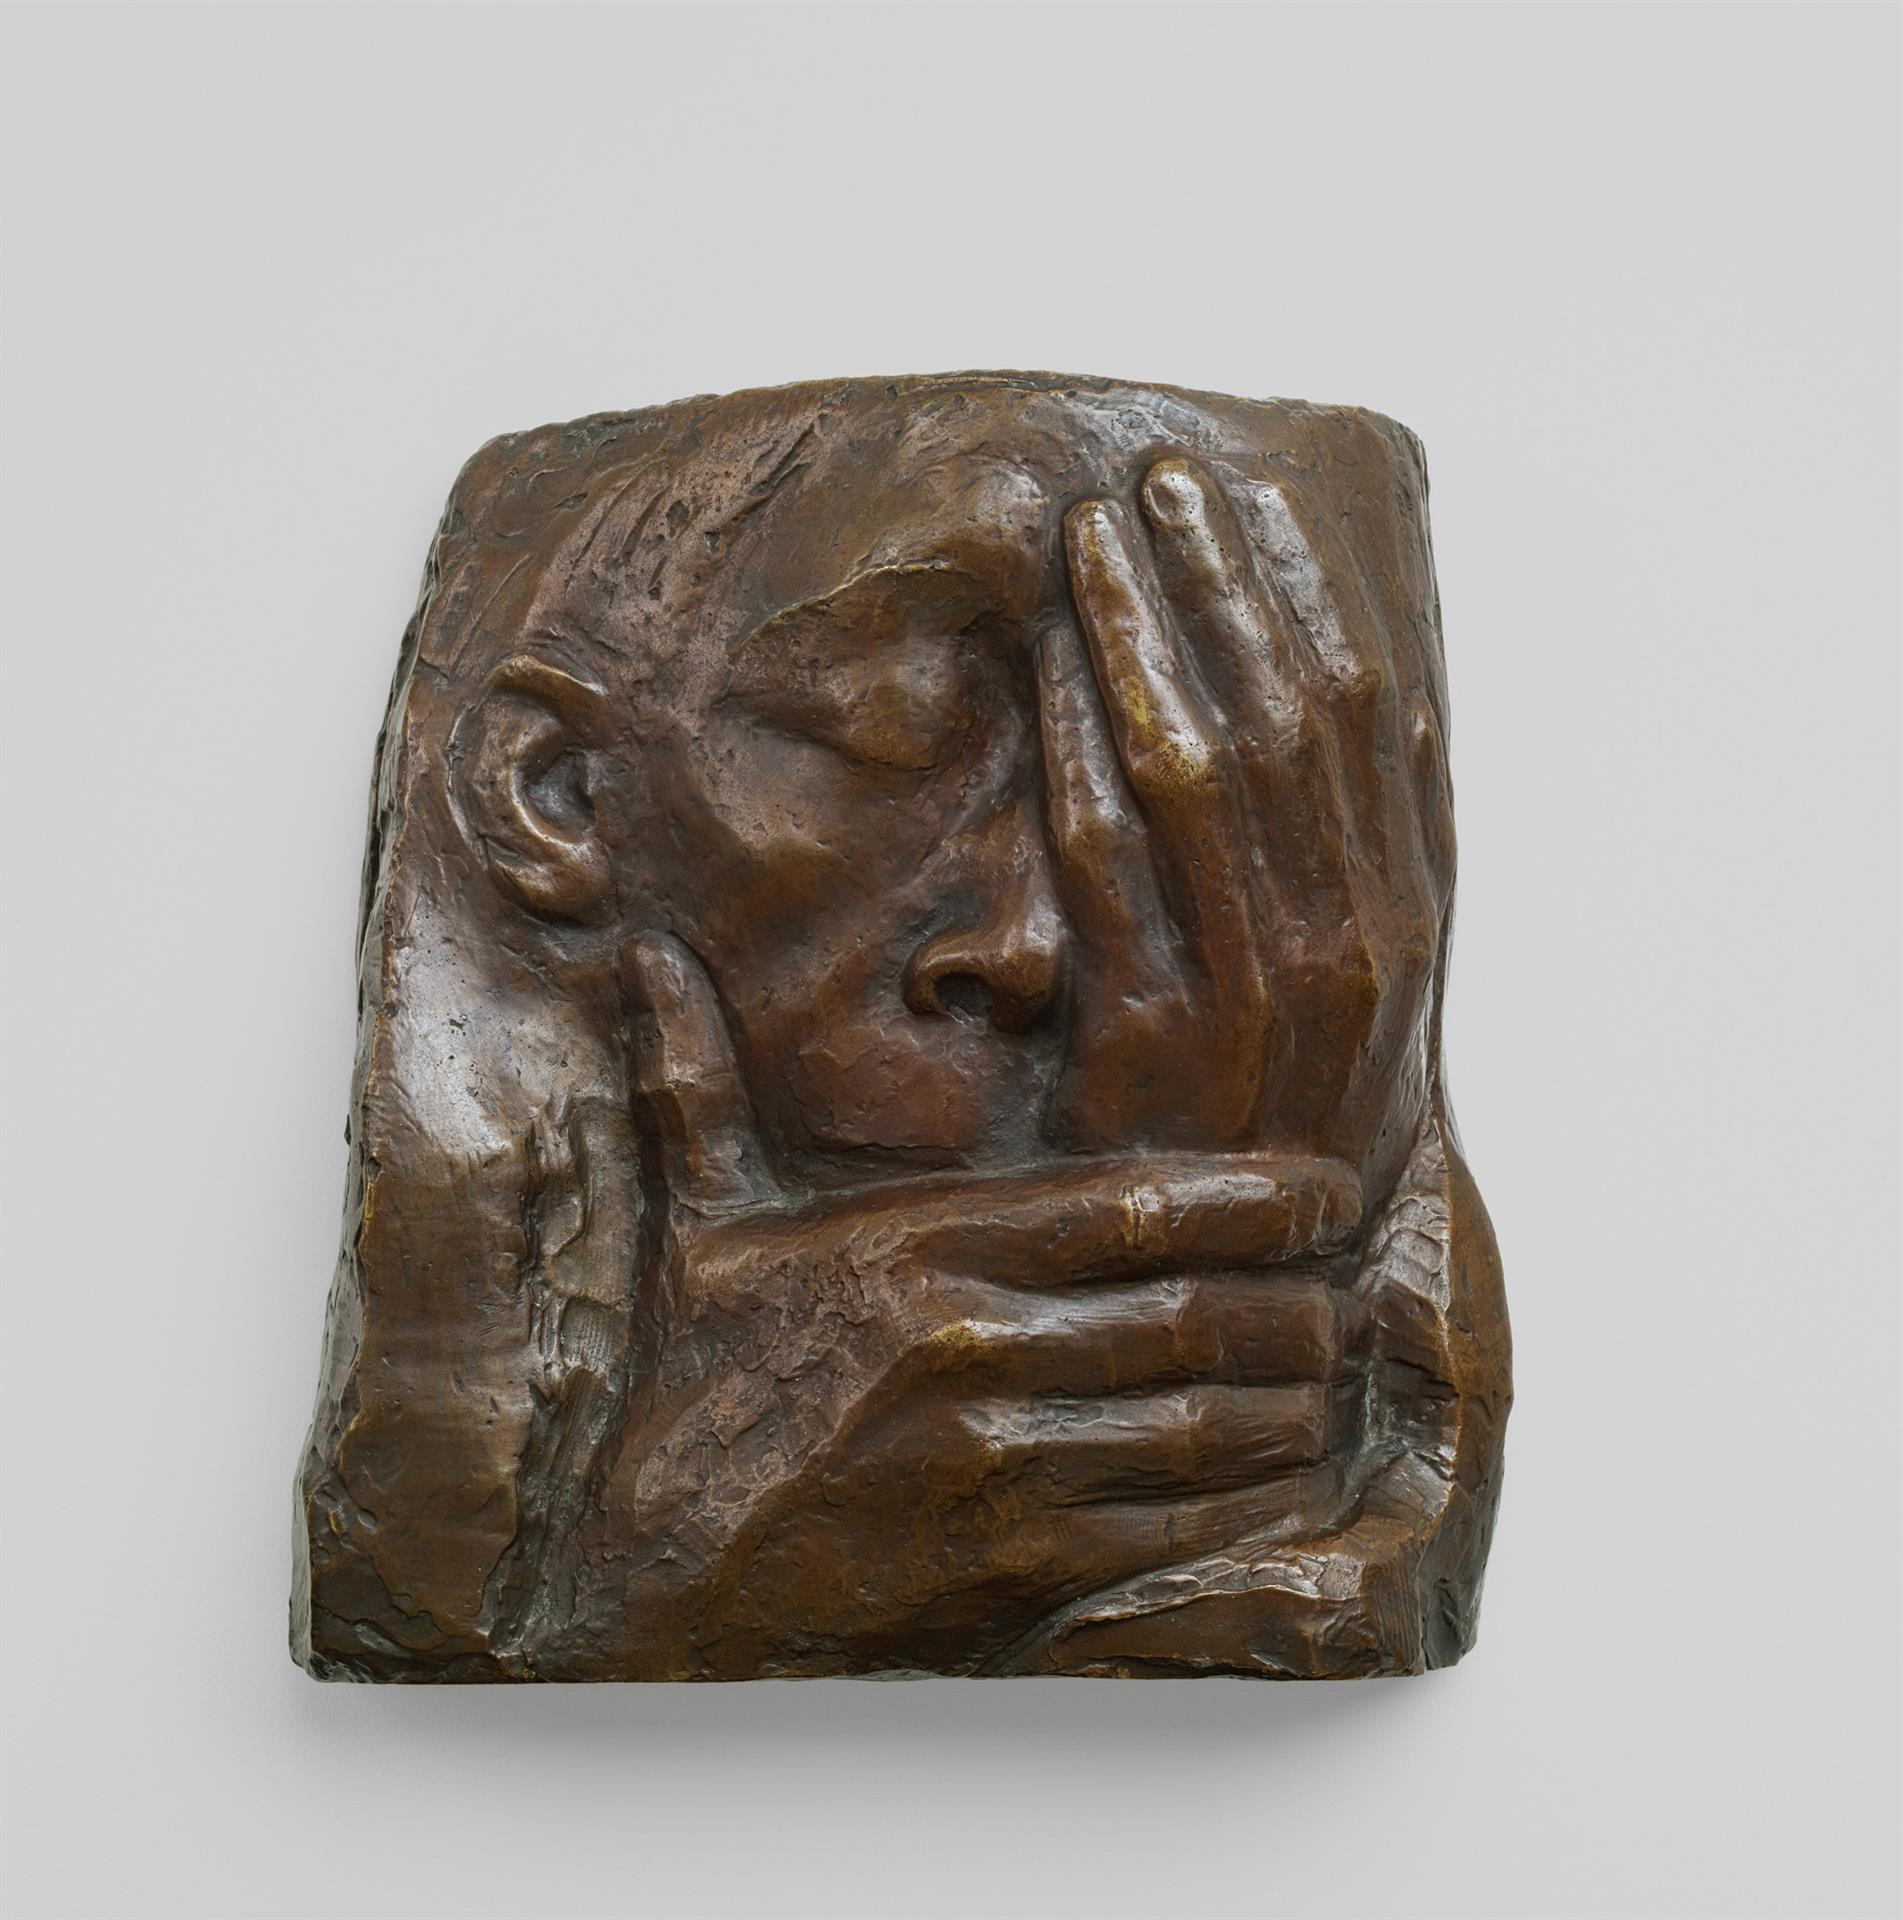 Käthe Kollwitz, Lamentation, 1938-41, bronze, Seeler 38 I.B.3., Collection Kollwitz de Cologne © Käthe Kollwitz Museum Köln